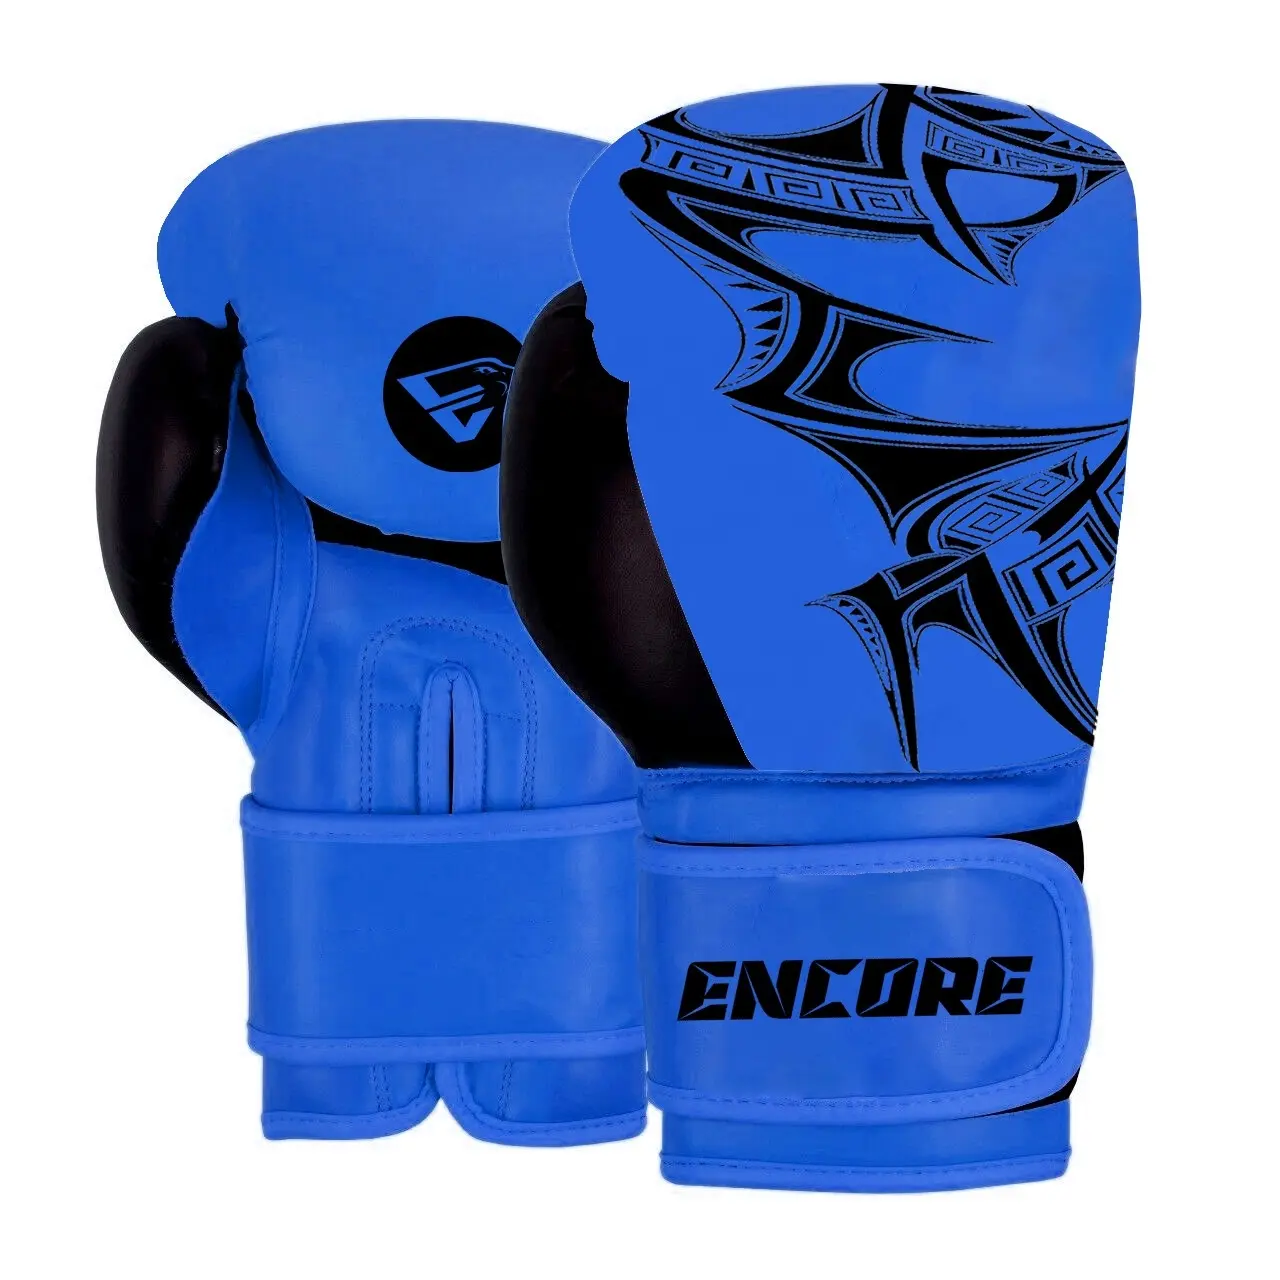 Encore boks eldiveni ergonomik yüksek yoğunluklu eğitim eldivenleri-8/12 / 16 ons erkekler için eğitim/boks eldiveni